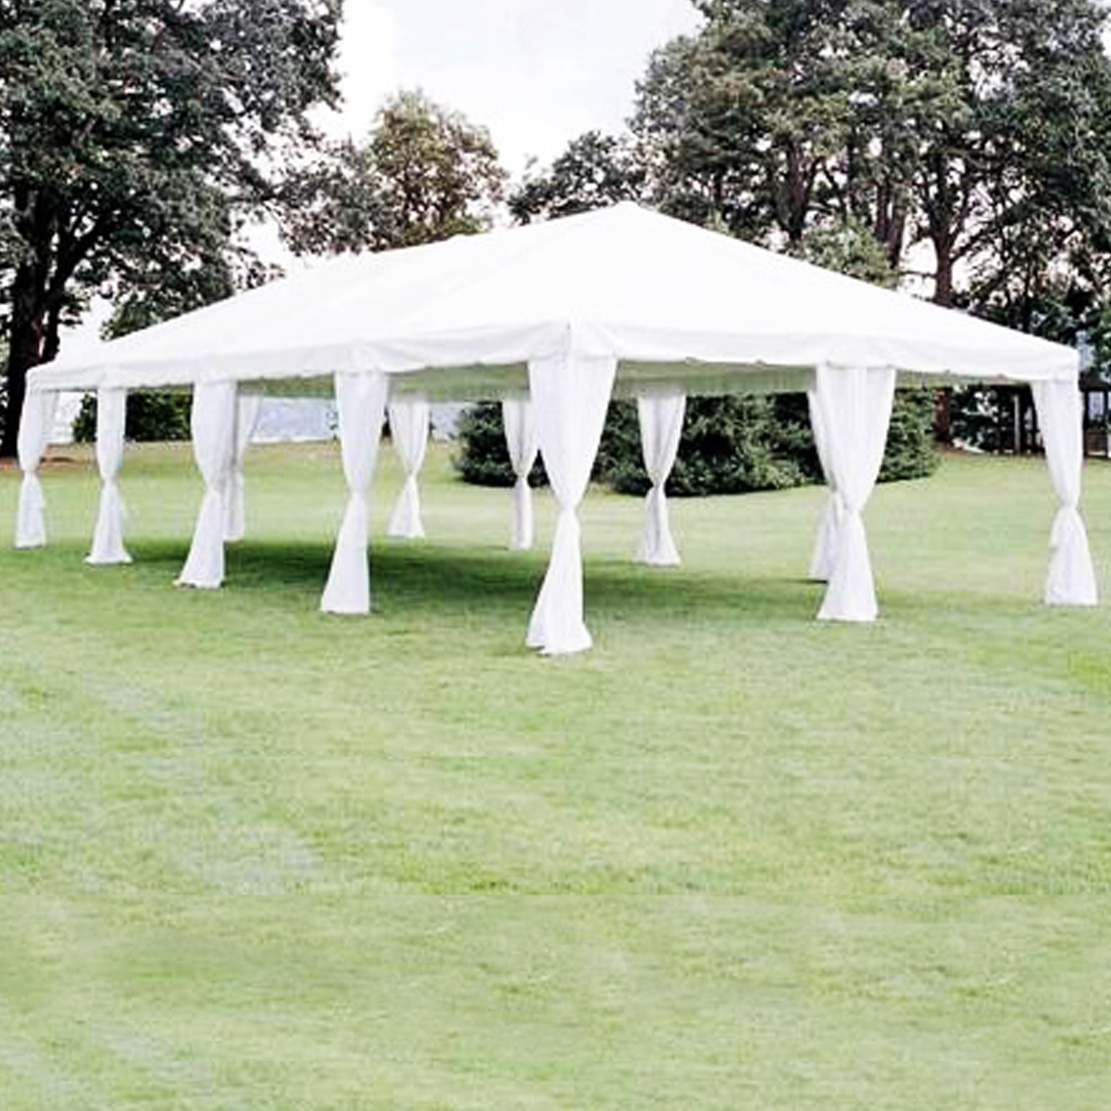  wedding tent rentals winnipeg